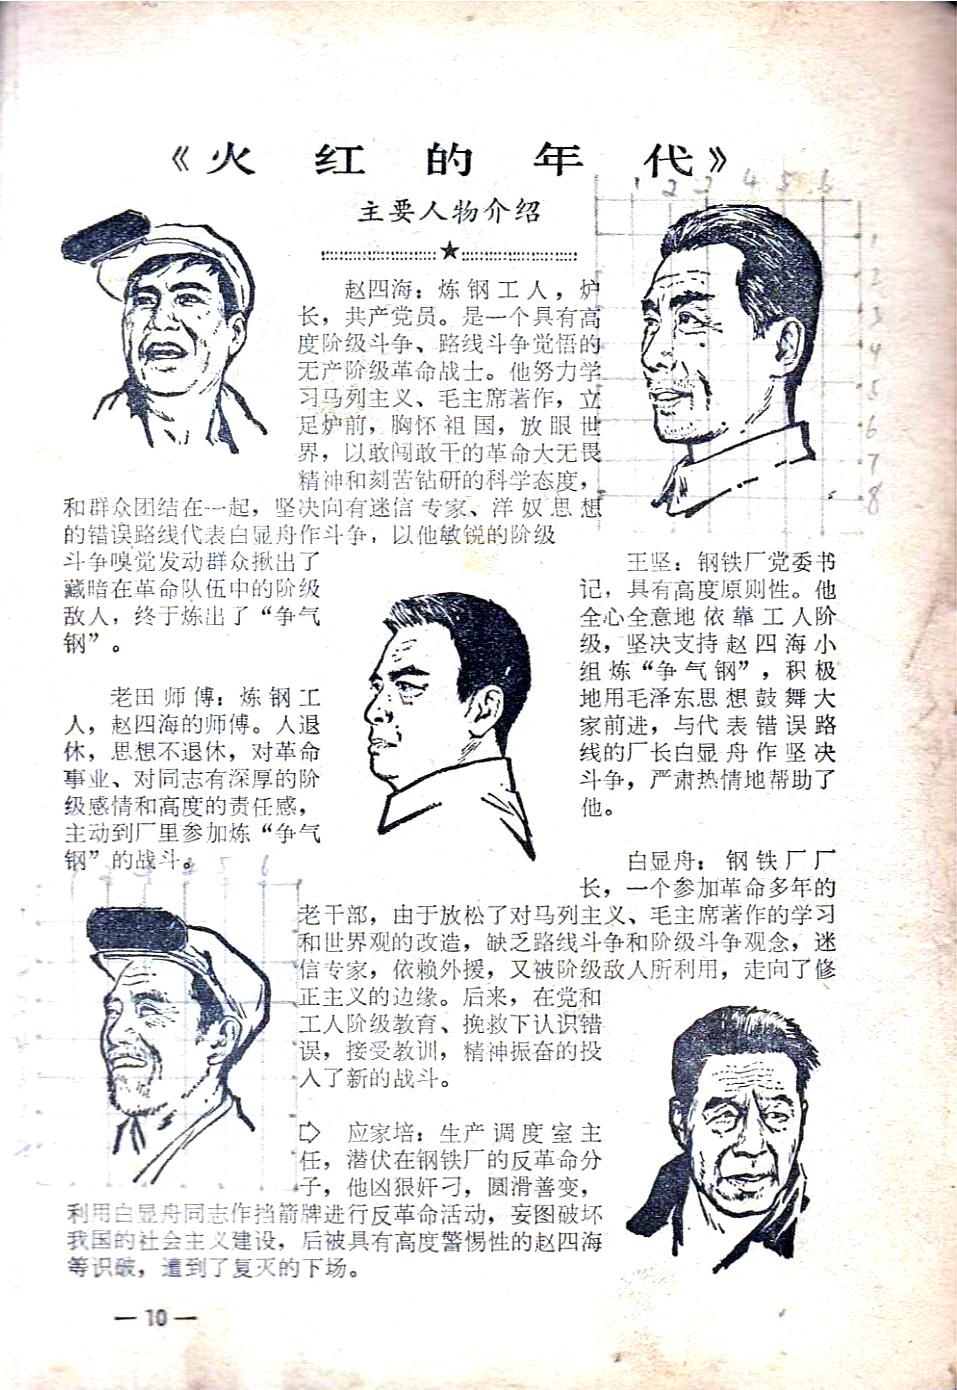 电影手绘海报(封面1974’ 电影《火红的年代》手绘海报-于洋饰演赵四海)